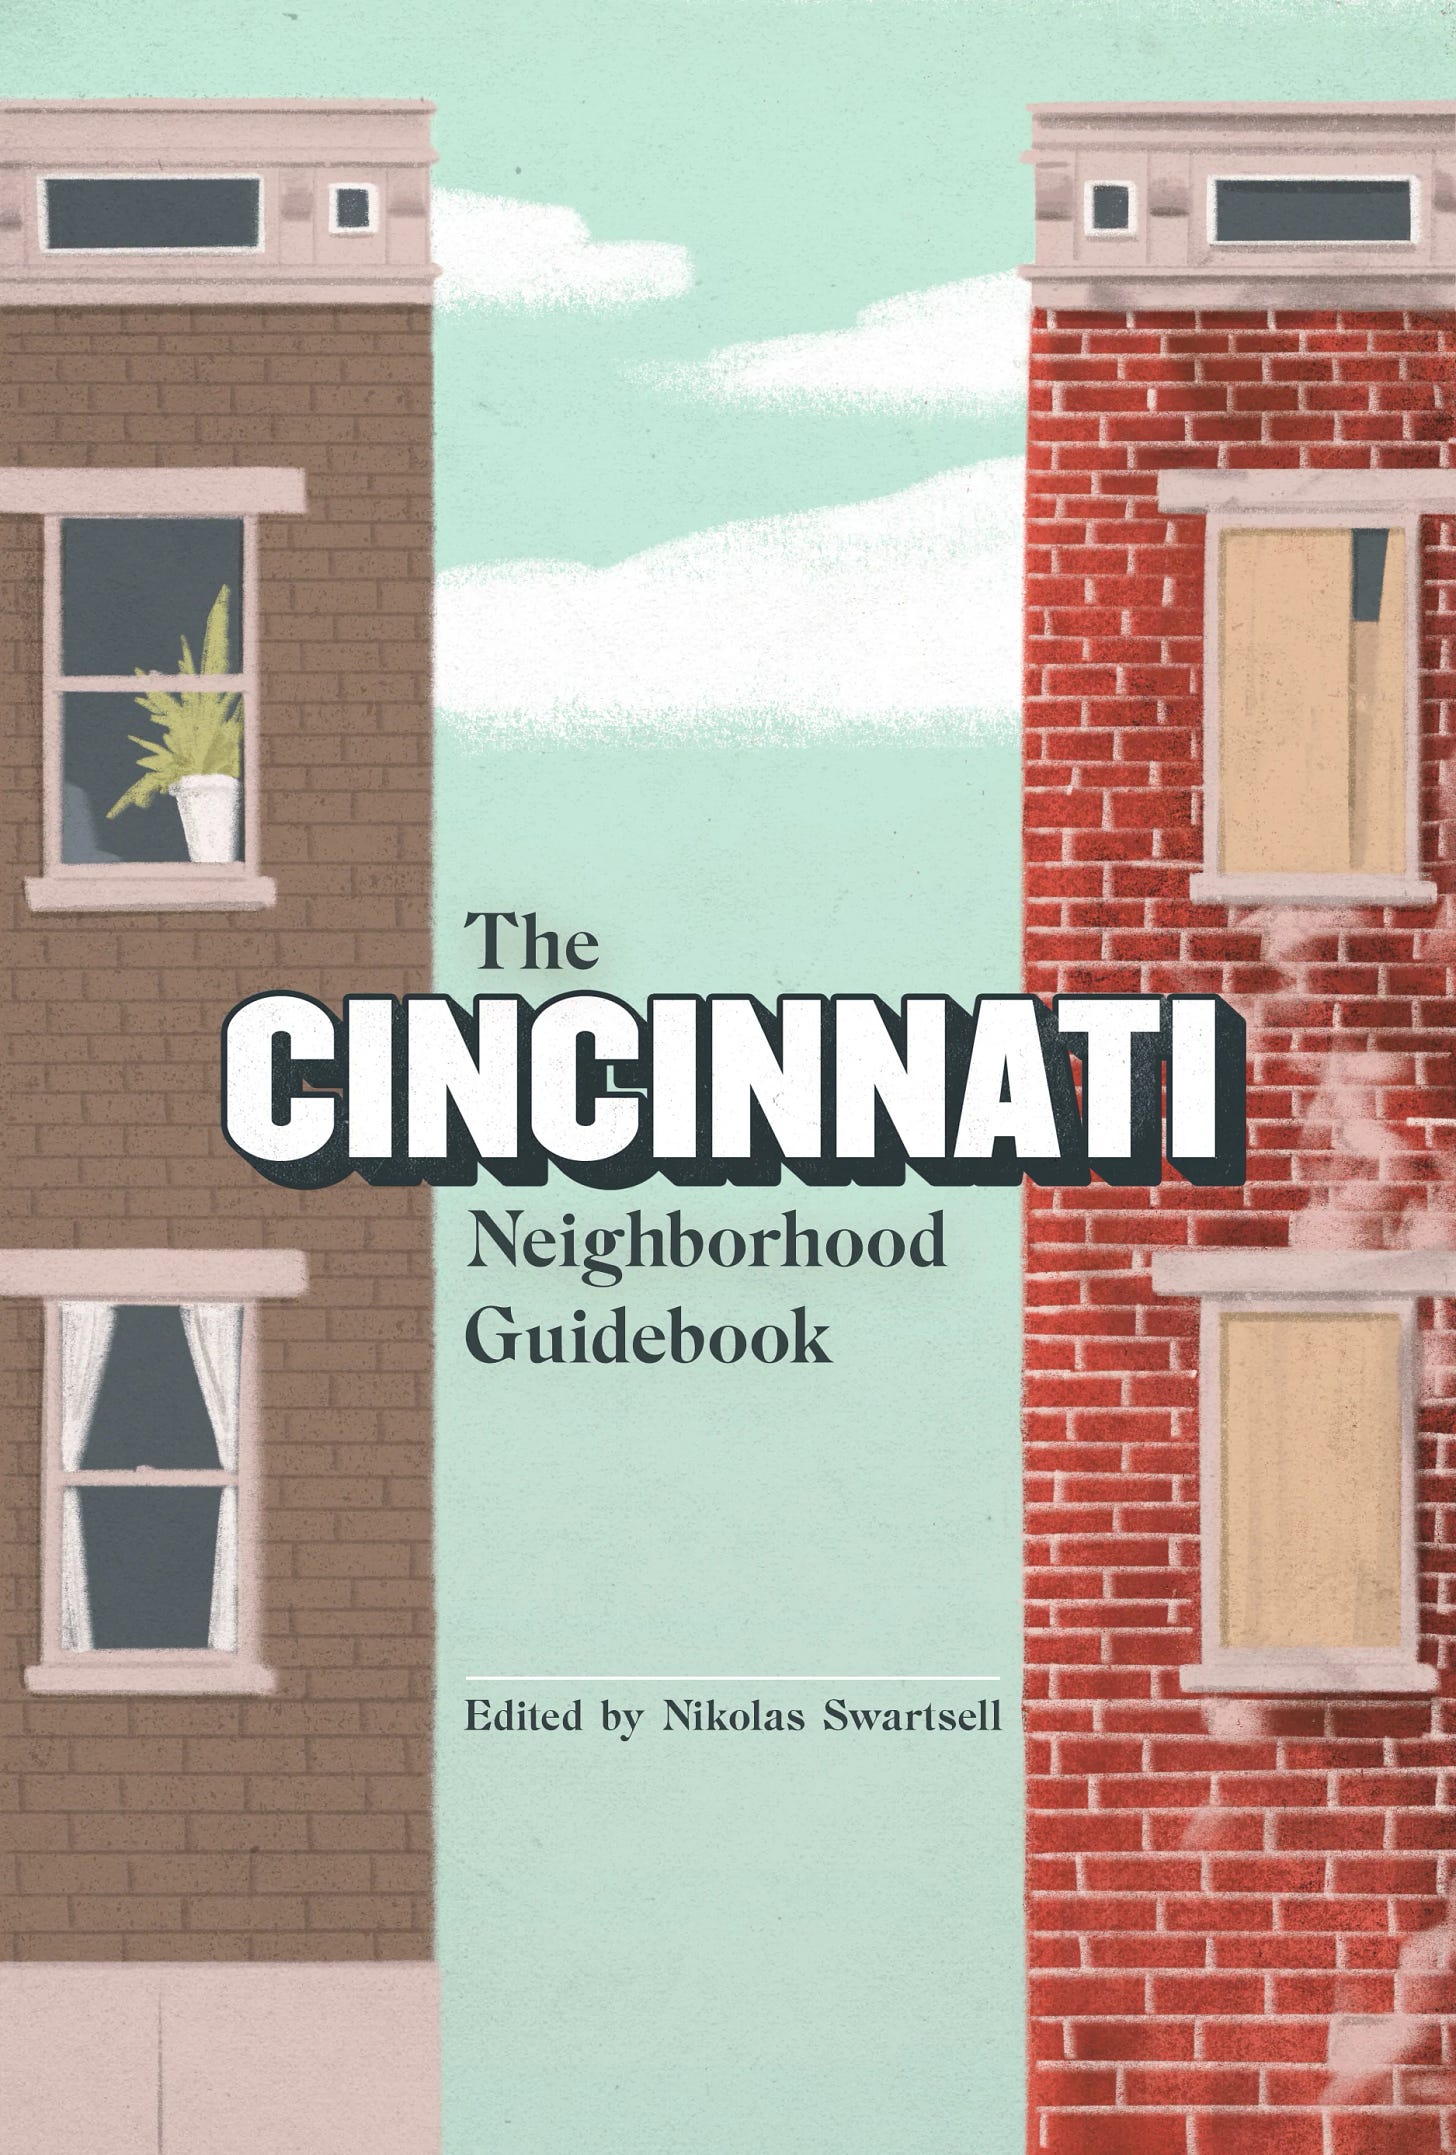 The Cincinnati Neighborhood Guidebook will be released December 2022